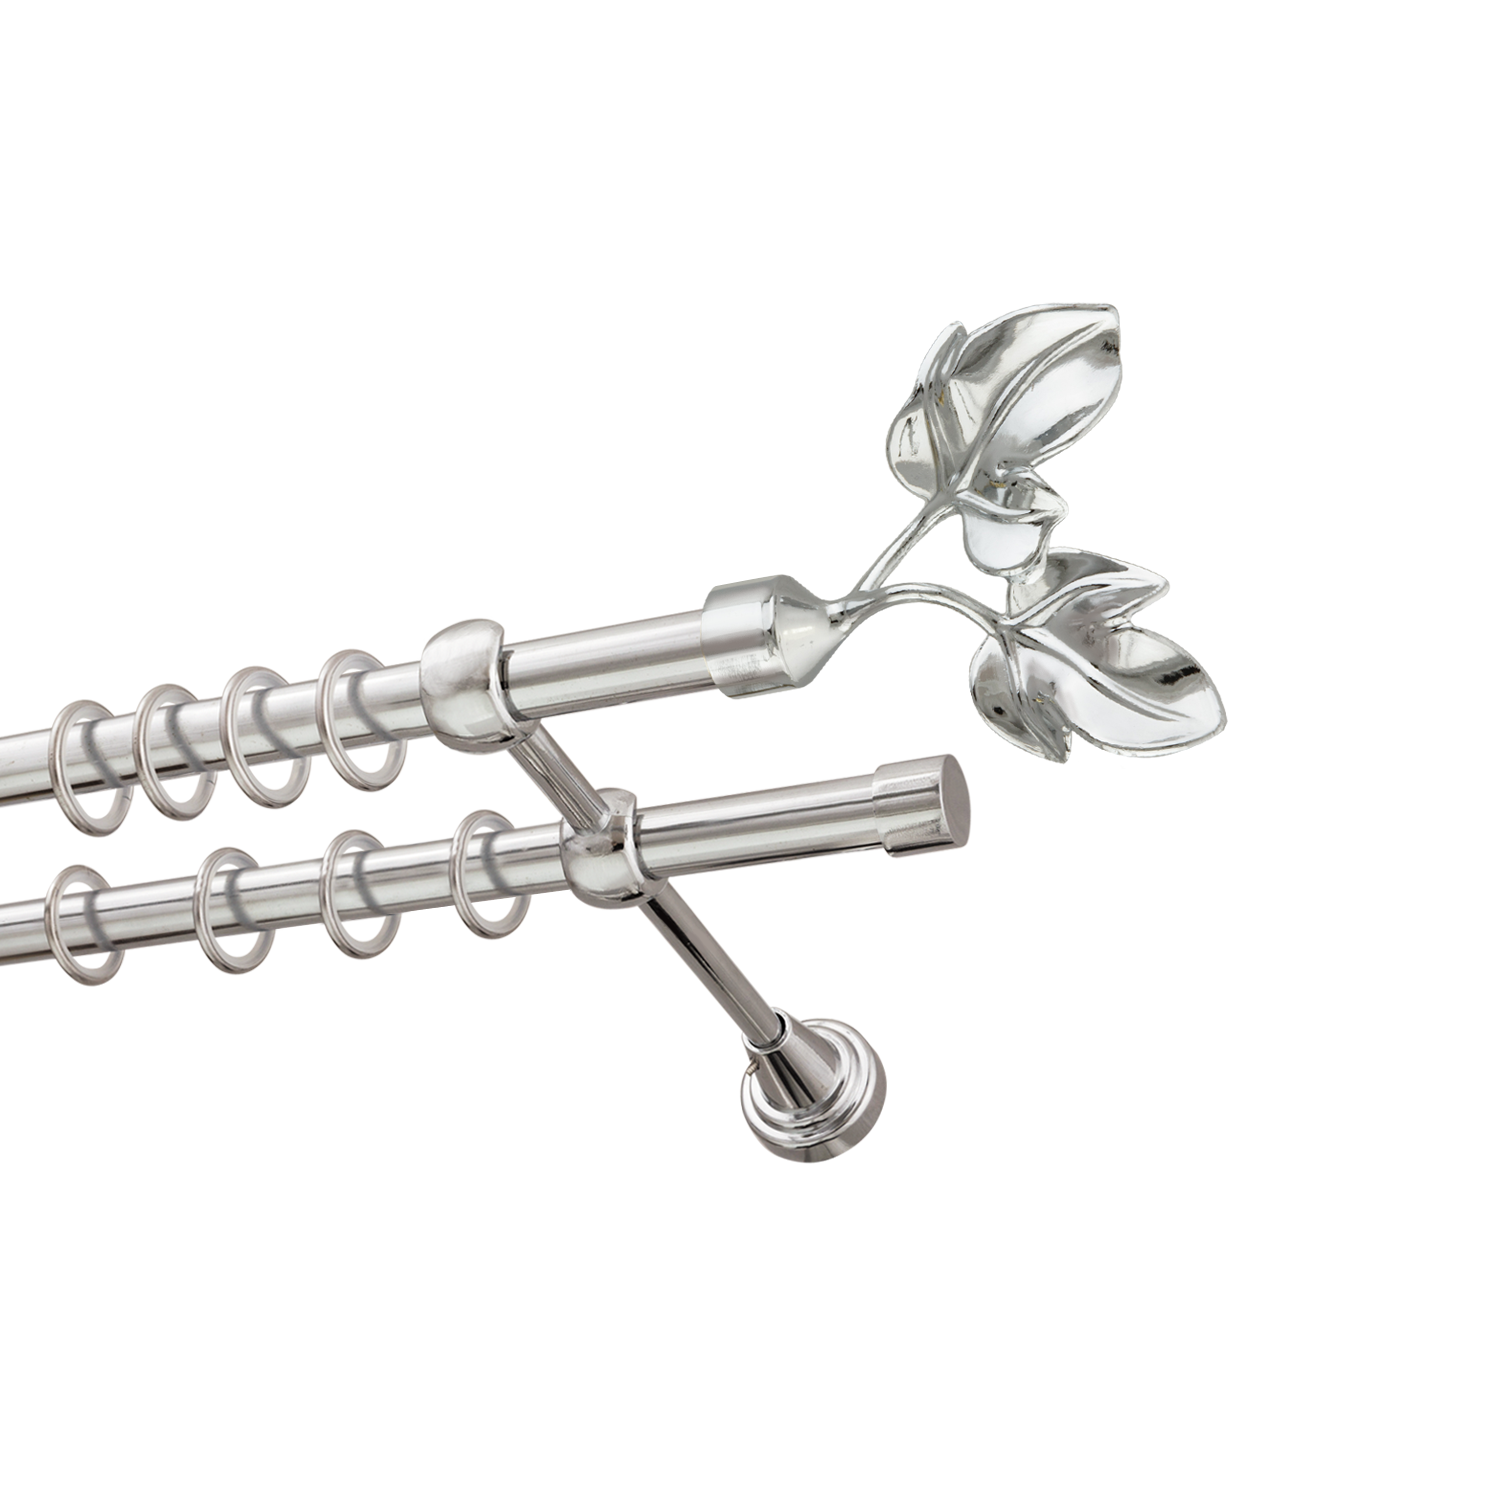 Металлический карниз для штор Листья, двухрядный 16/16 мм, серебро, гладкая штанга, длина 160 см - фото Wikidecor.ru